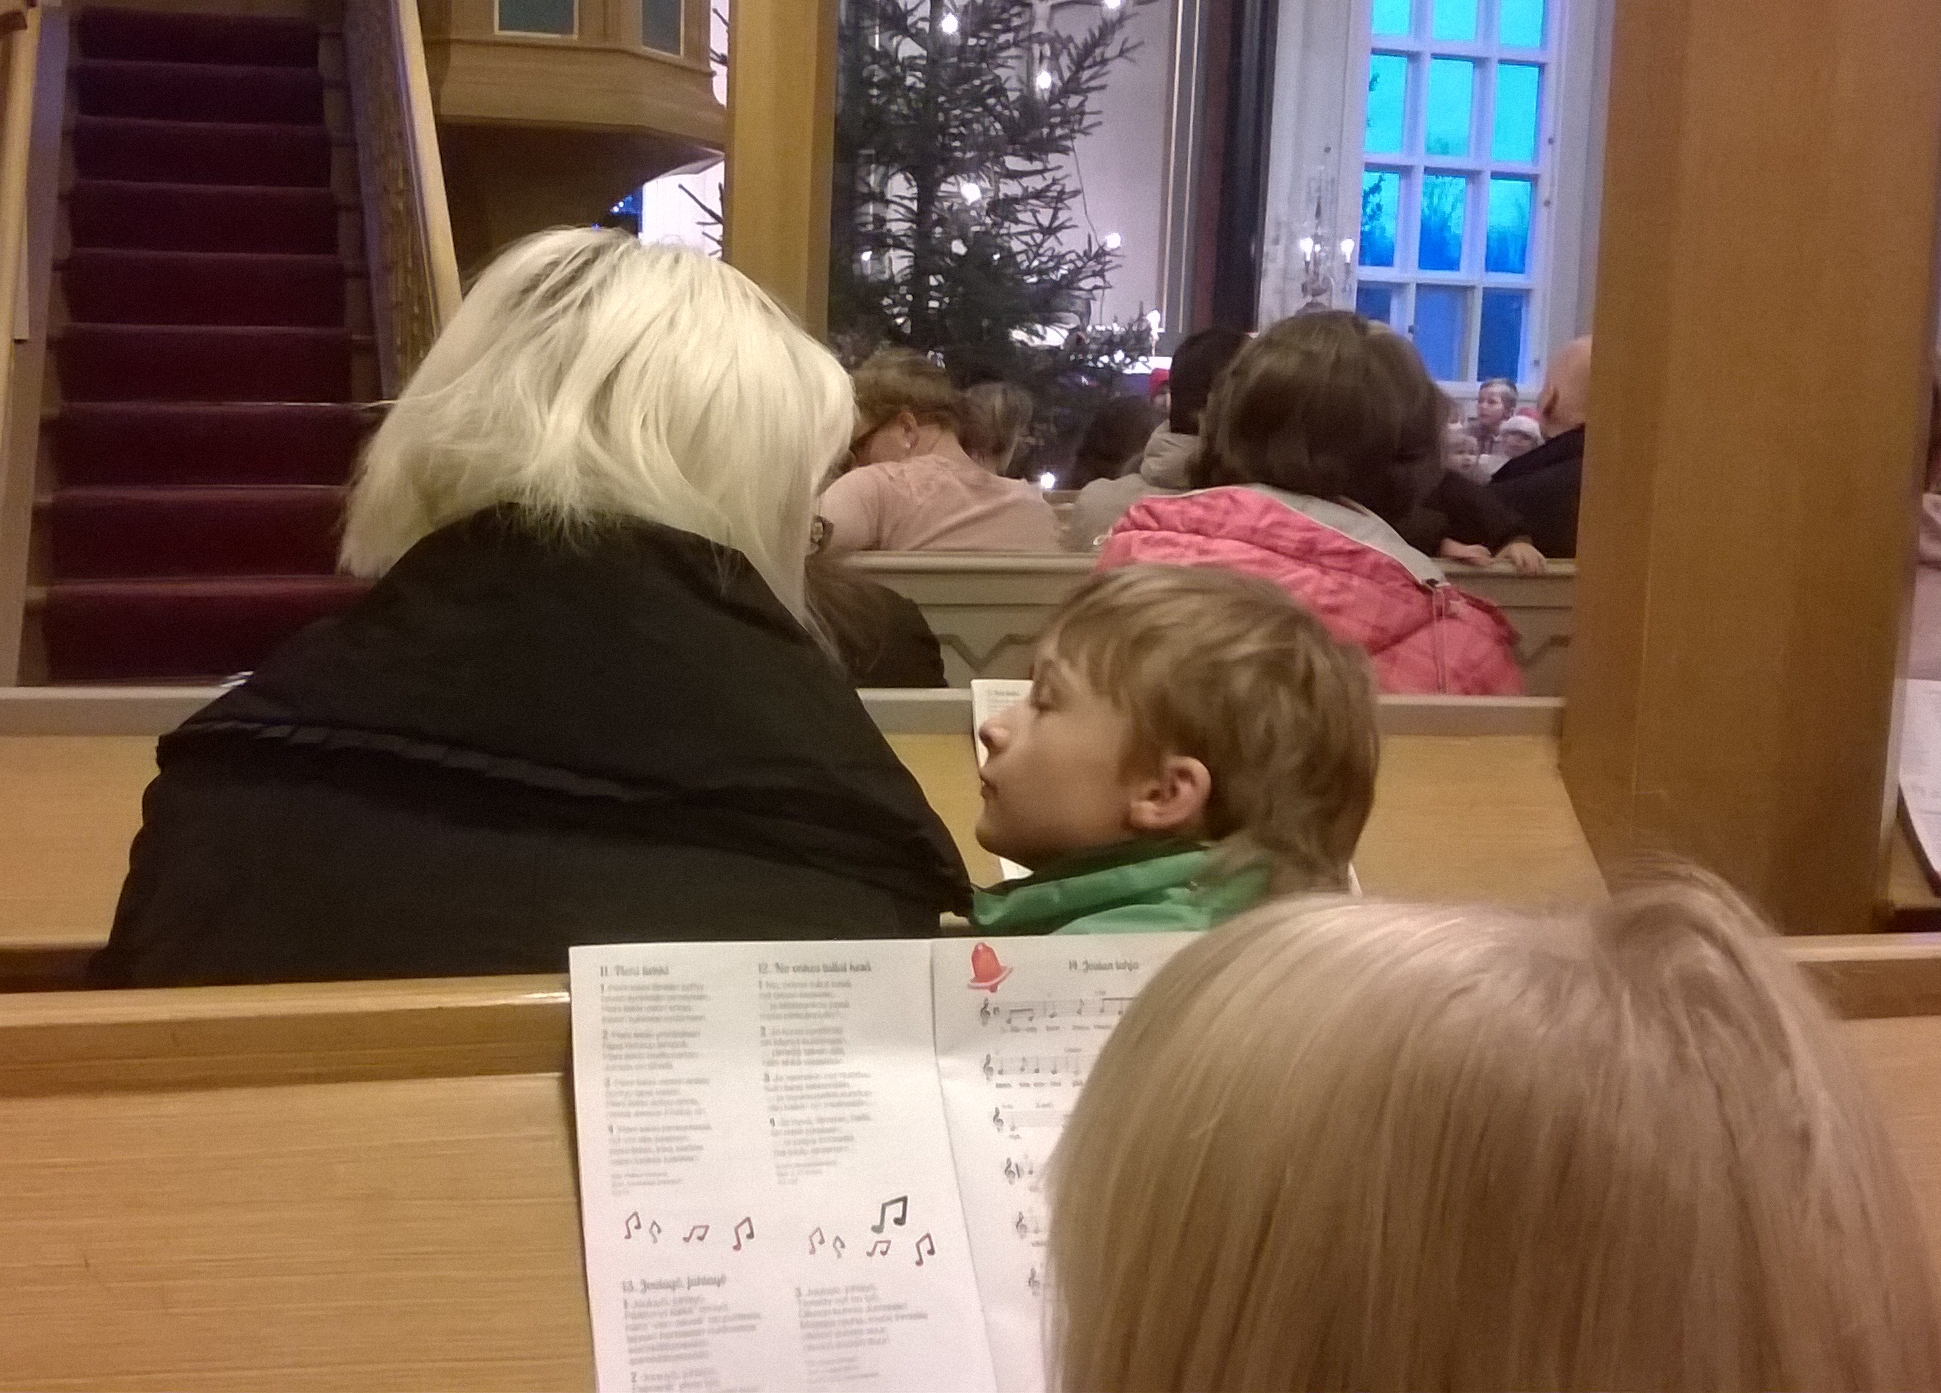 Kuva kauneimpien joululaulujen laulamisesta kirkossa, jossa pieni poika katsoo äitiinsä